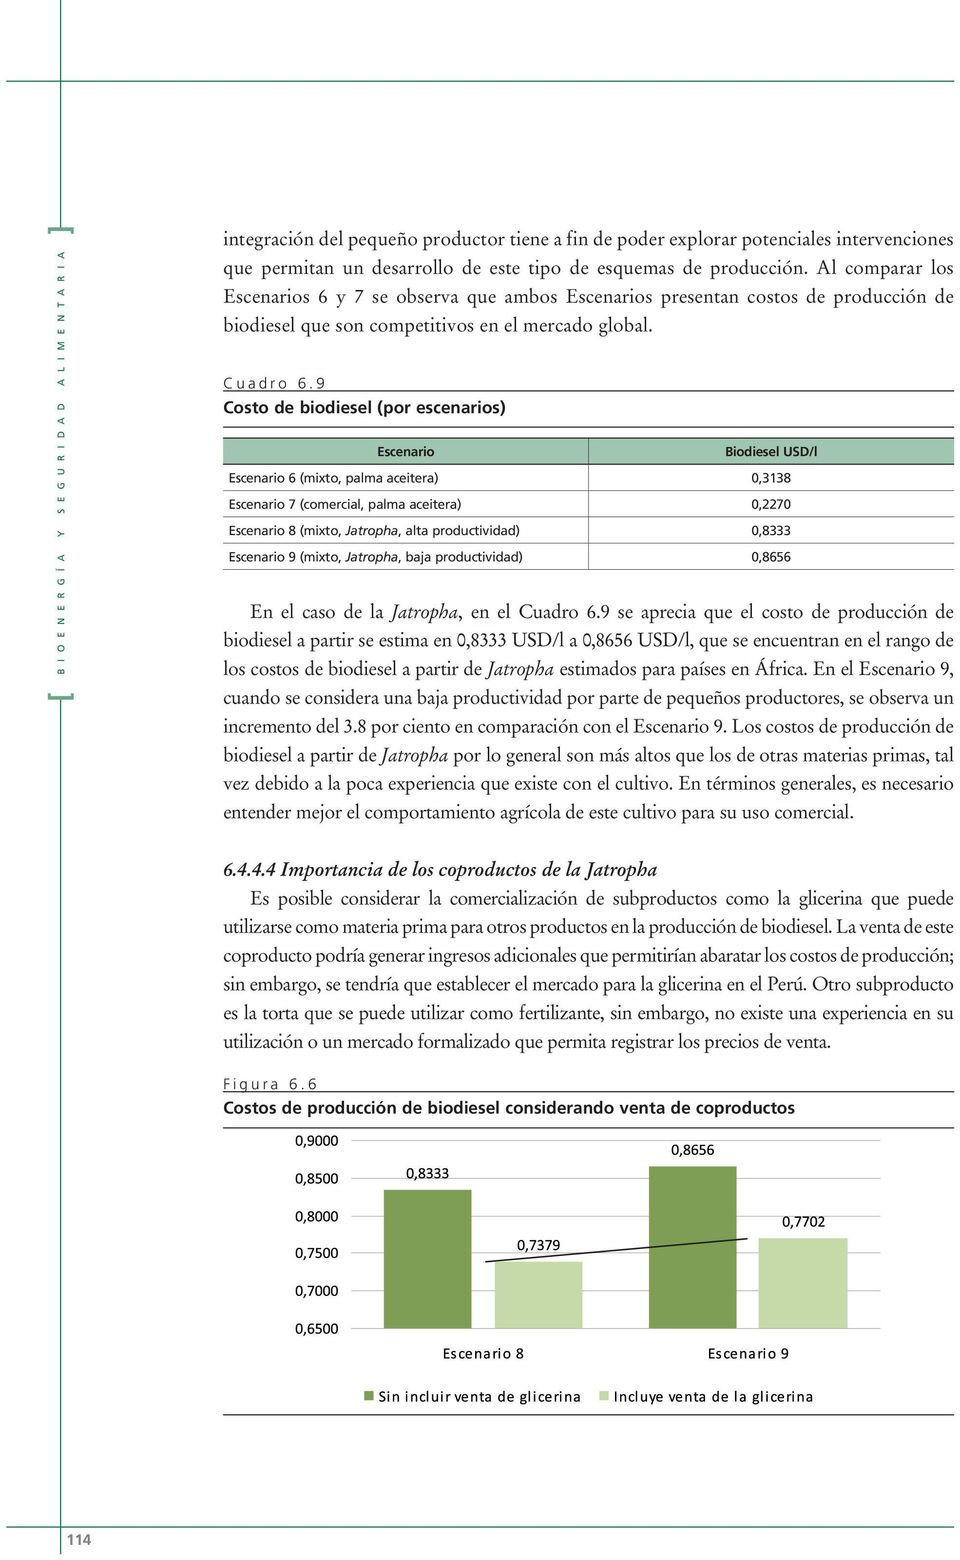 9 Costo de biodiesel (por escenarios) Escenario Biodiesel USD/l Escenario 6 (mixto, palma aceitera) 0,3138 Escenario 7 (comercial, palma aceitera) 0,2270 Escenario 8 (mixto, Jatropha, alta